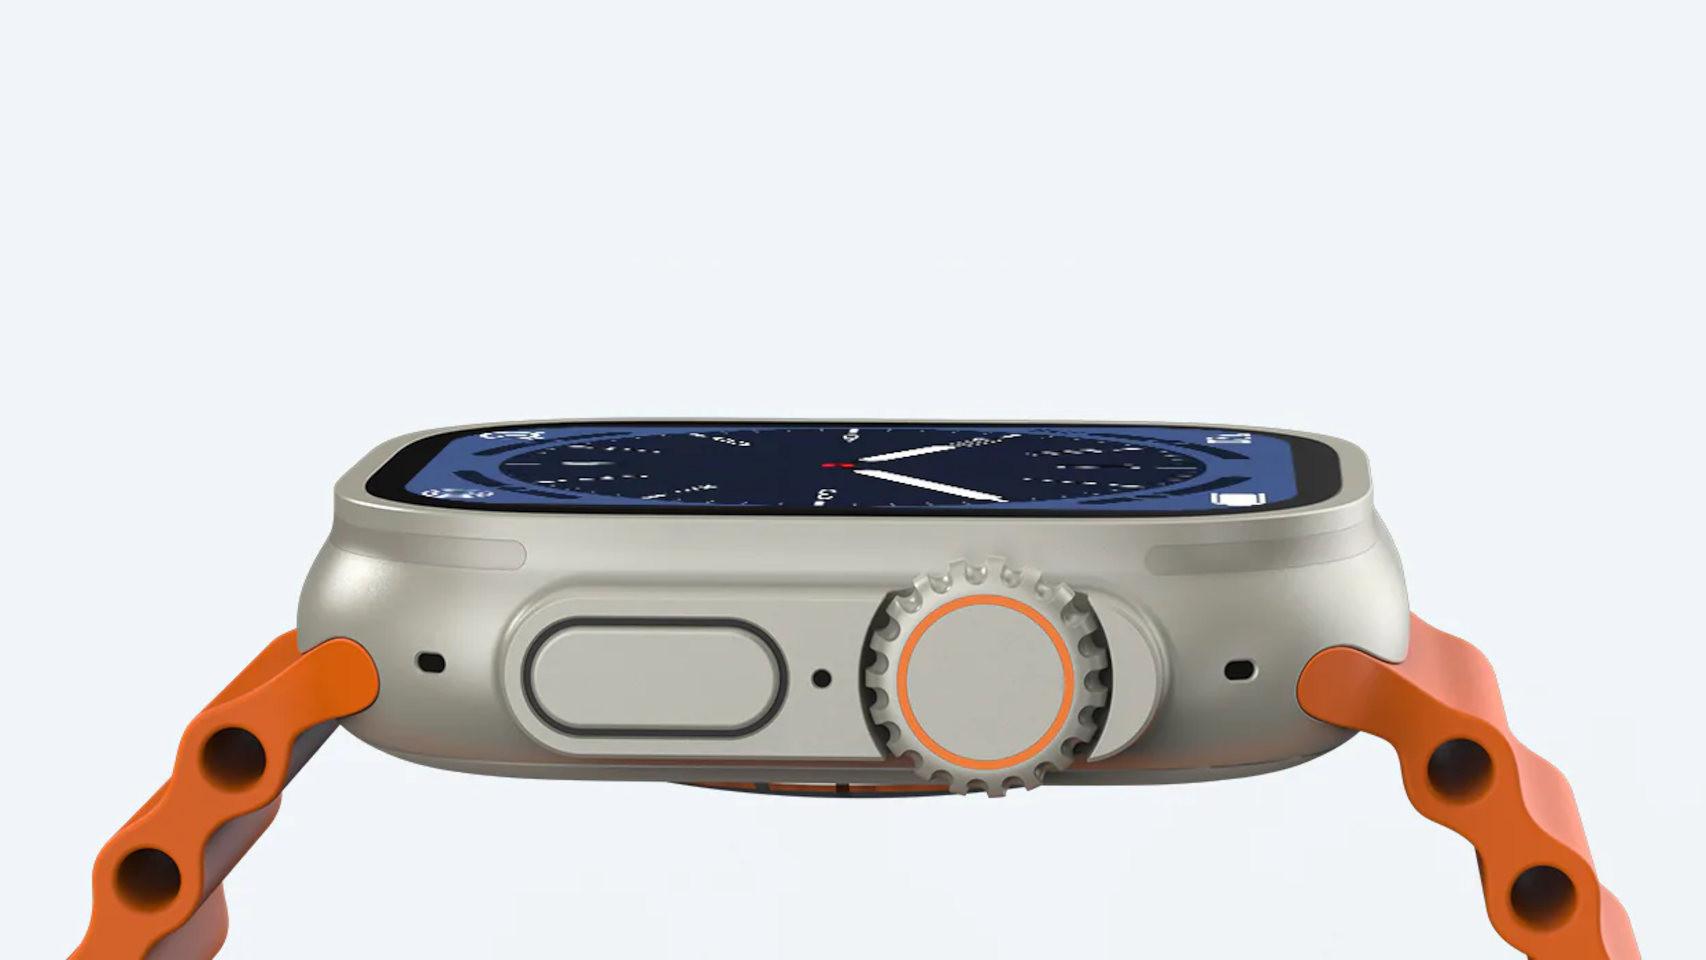 Ya hay una copia del nuevo Apple Watch Ultra compatible con Android, y  cuesta sólo 34 euros